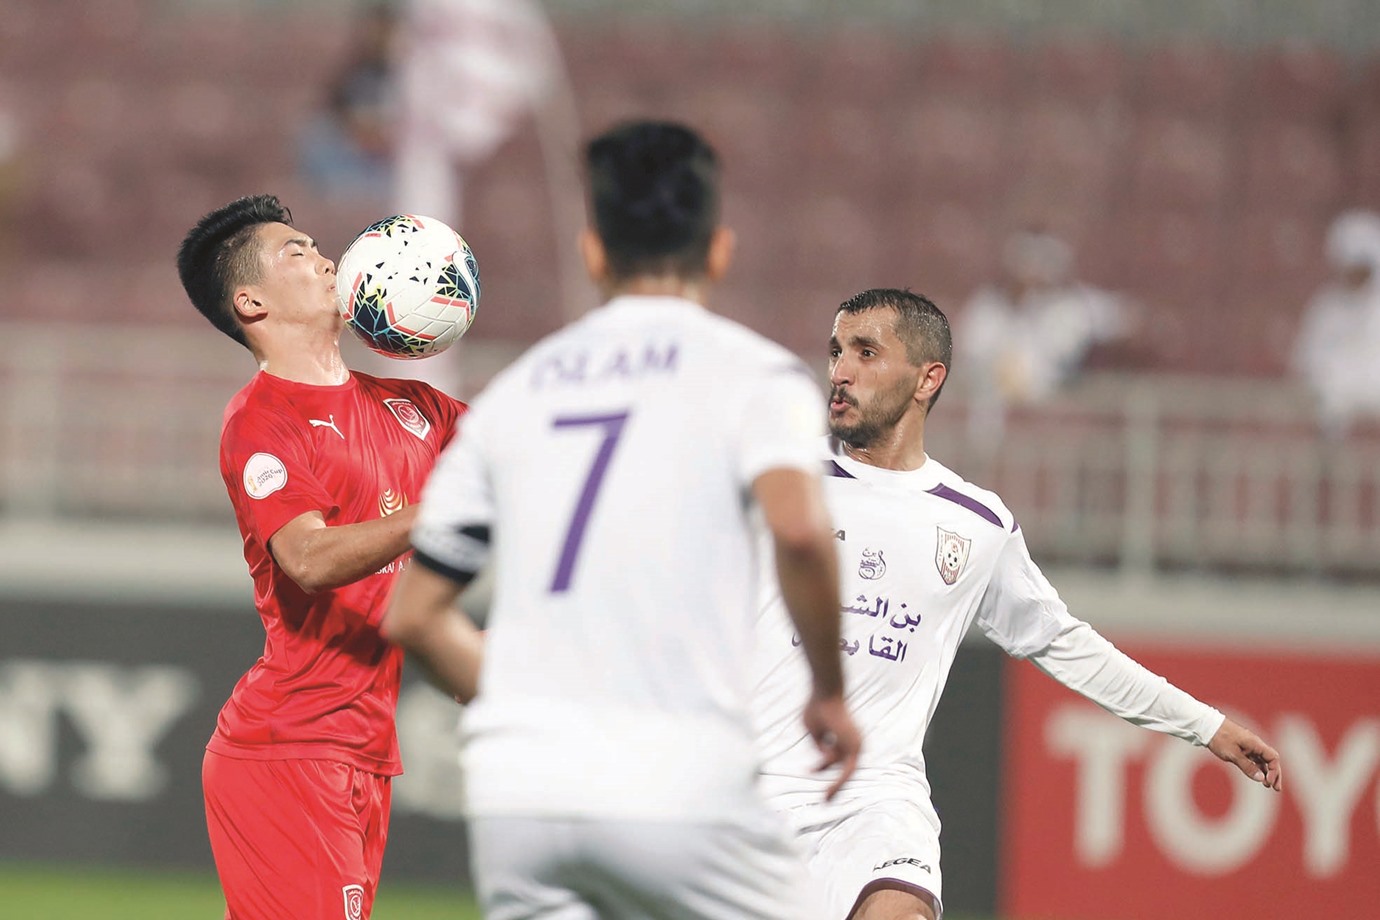 Amir Cup: Al Duhail, Al Sadd storm into quarters